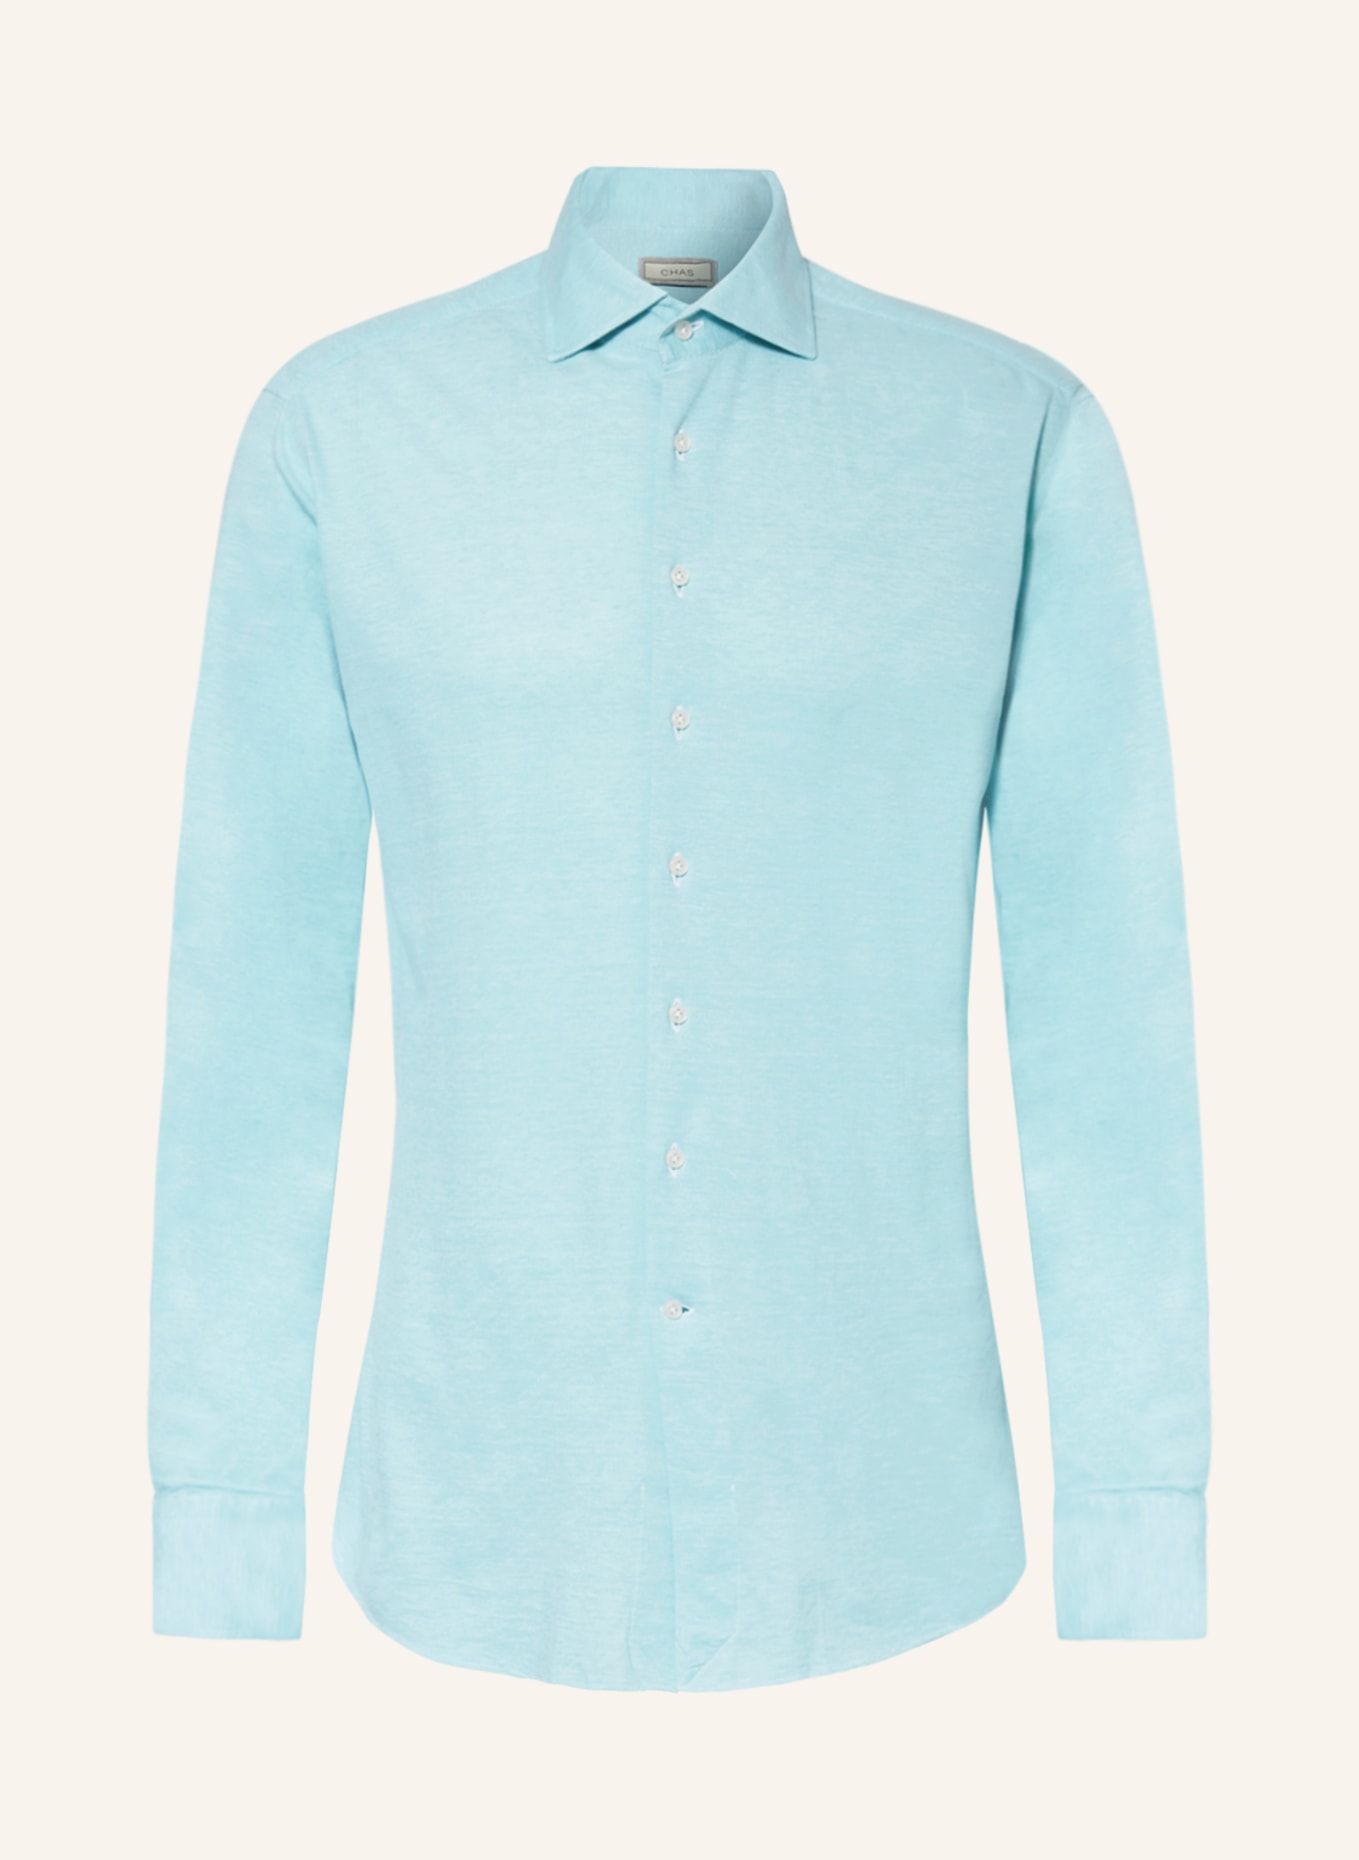 CHAS Piqué shirt ASONI classic fit, Color: NEON BLUE (Image 1)